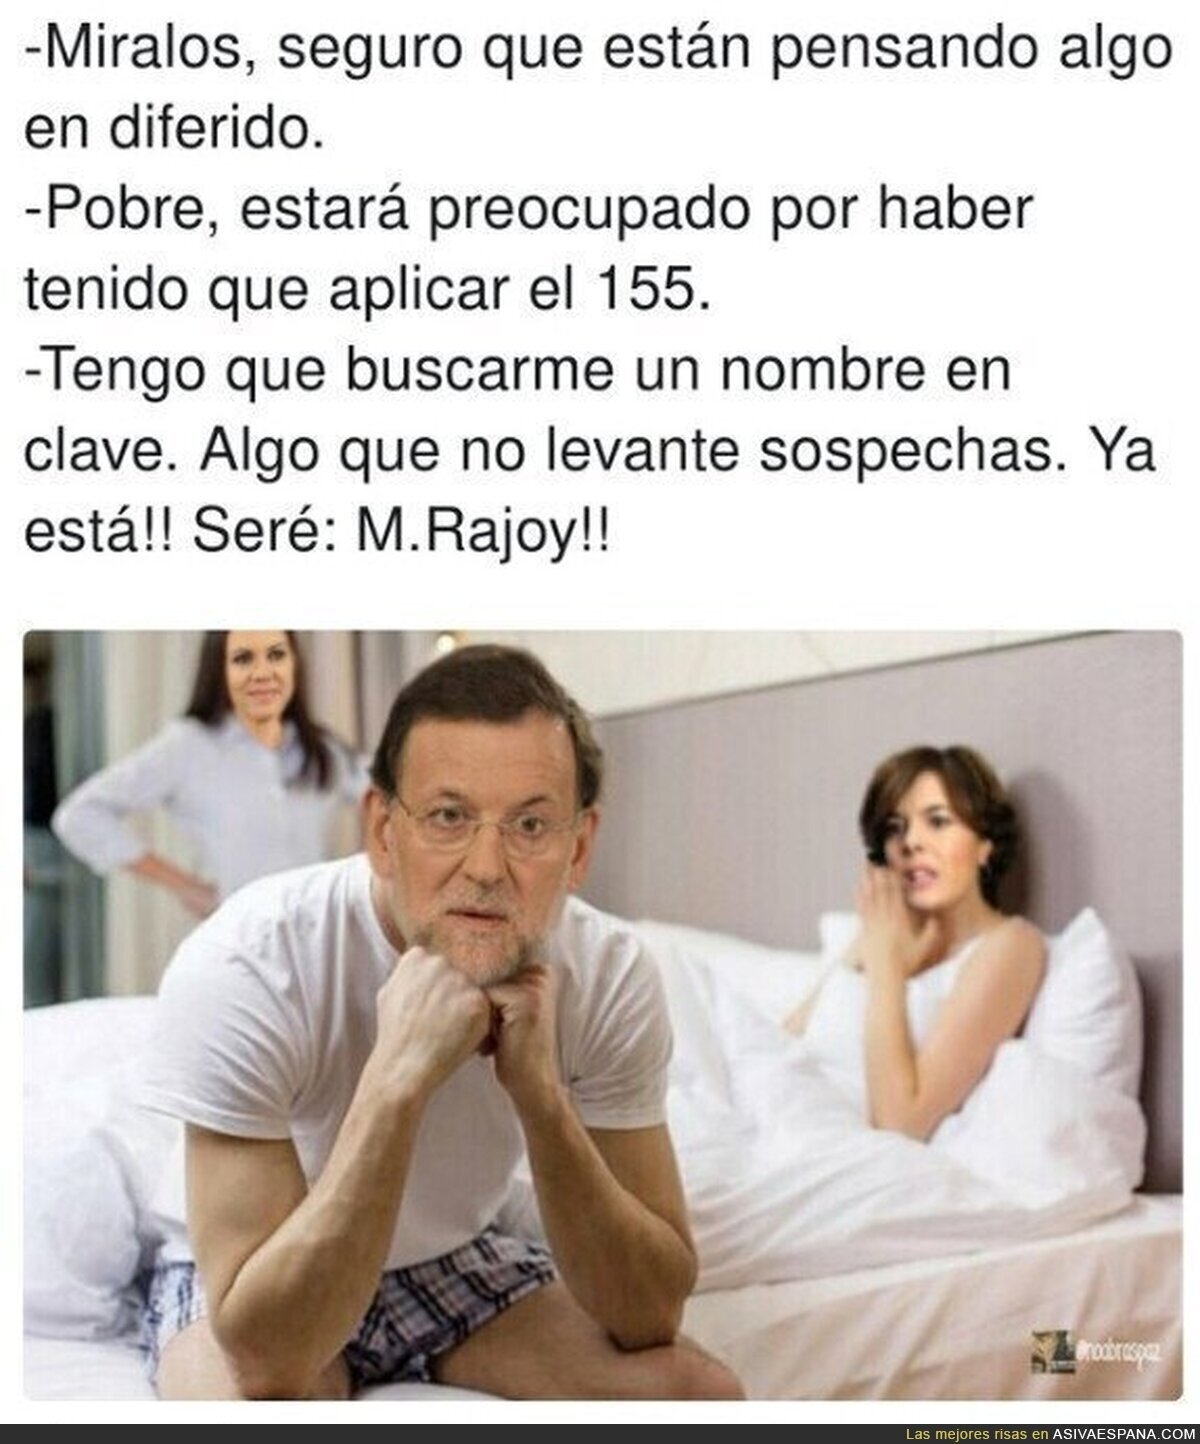 Las preocupaciones de M.Rajoy